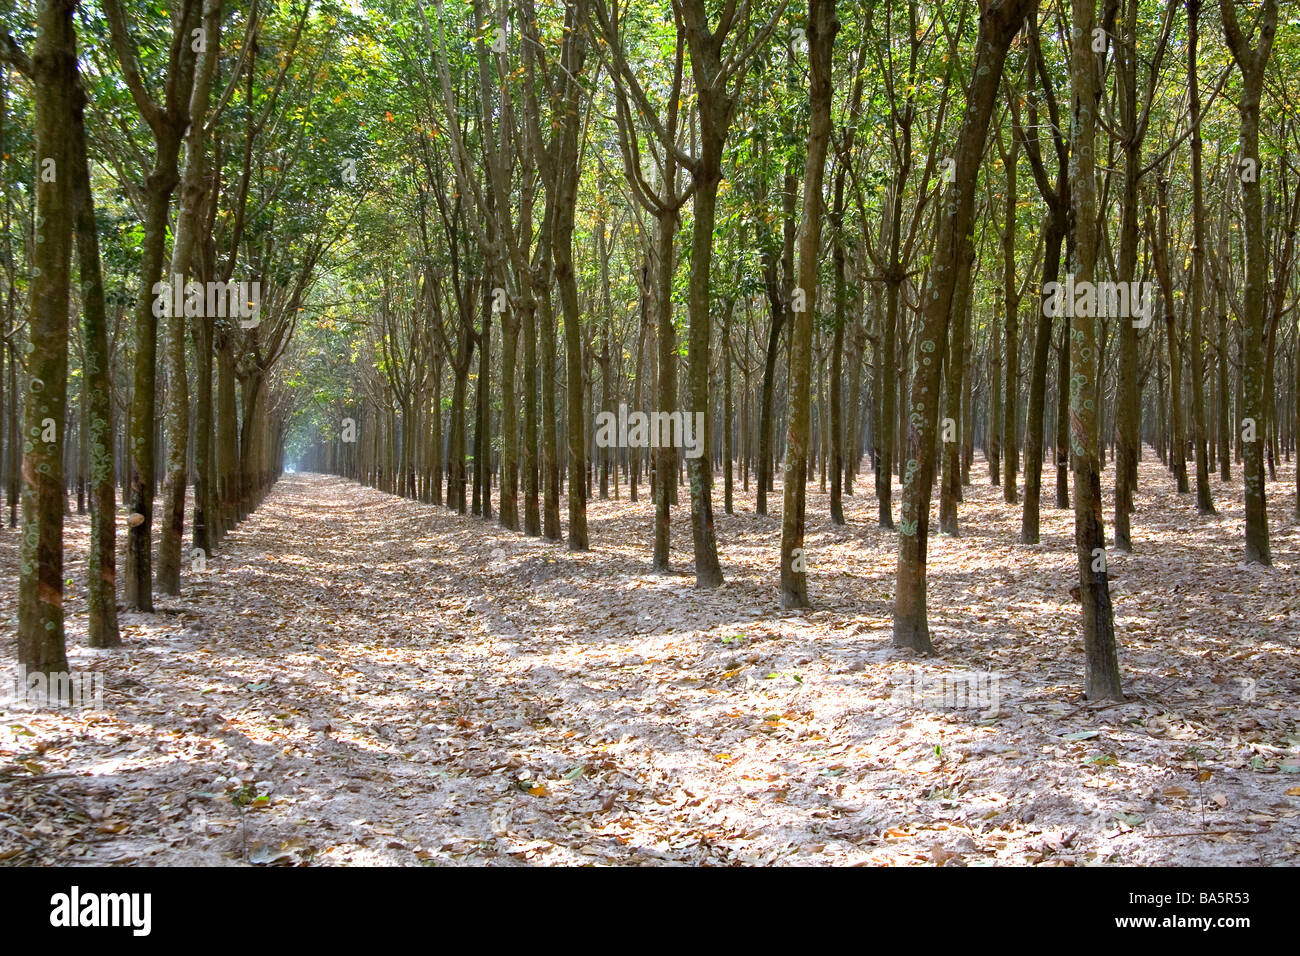 Rubber tree plantation near Tay Ninh Vietnam Stock Photo